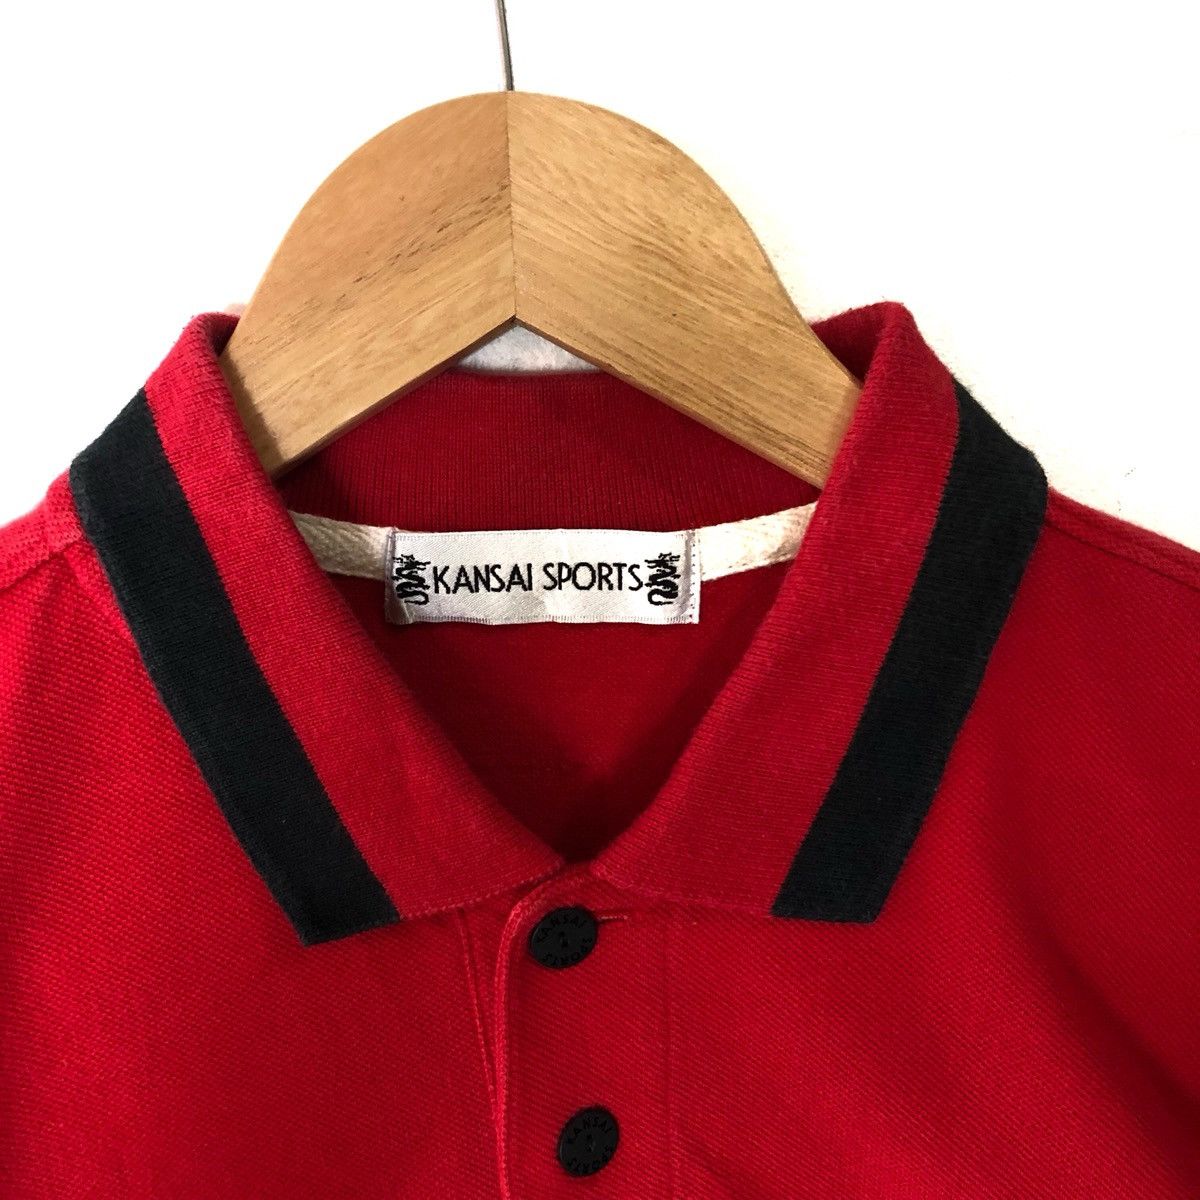 Japanese Brand Kansai Yamamoto Kansai Sports Polo Shirt Size US M / EU 48-50 / 2 - 6 Thumbnail